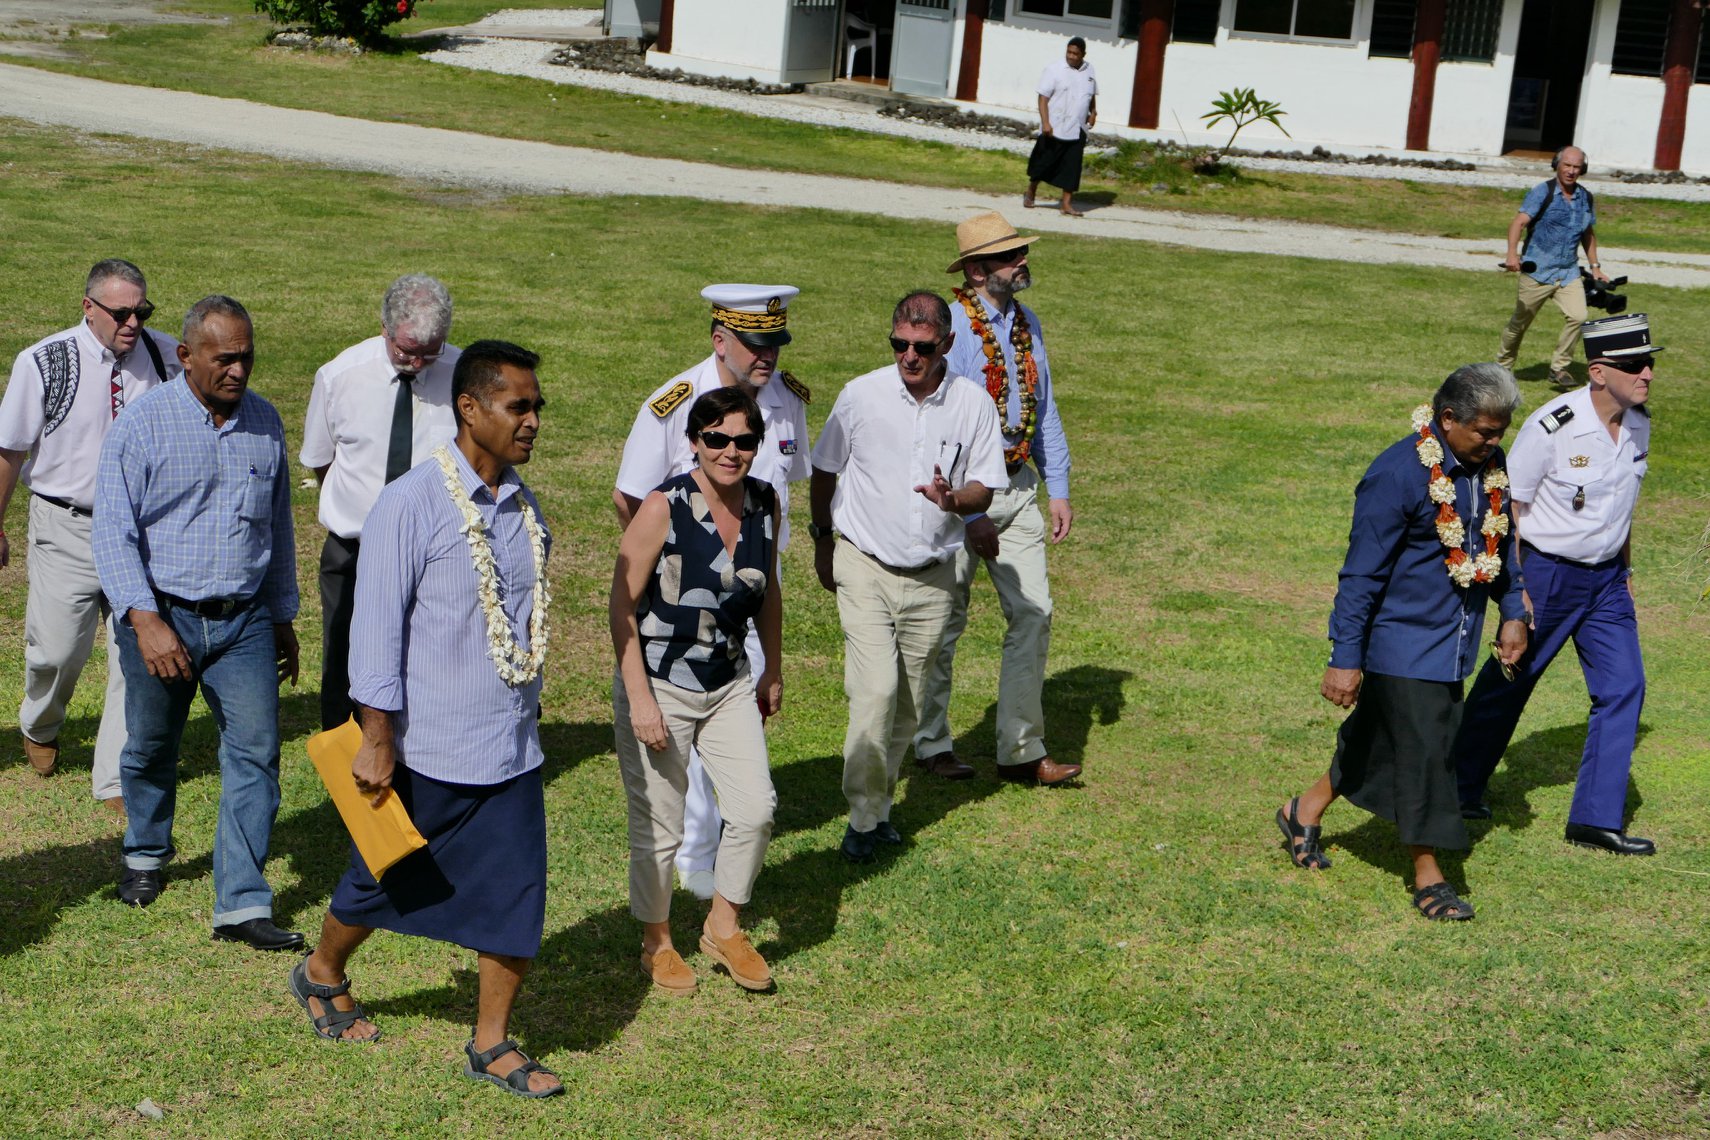 Pour la Ministre des Outre-mer, le statut de Wallis et Futuna &laquo;&nbsp;doit évoluer&nbsp;&raquo;